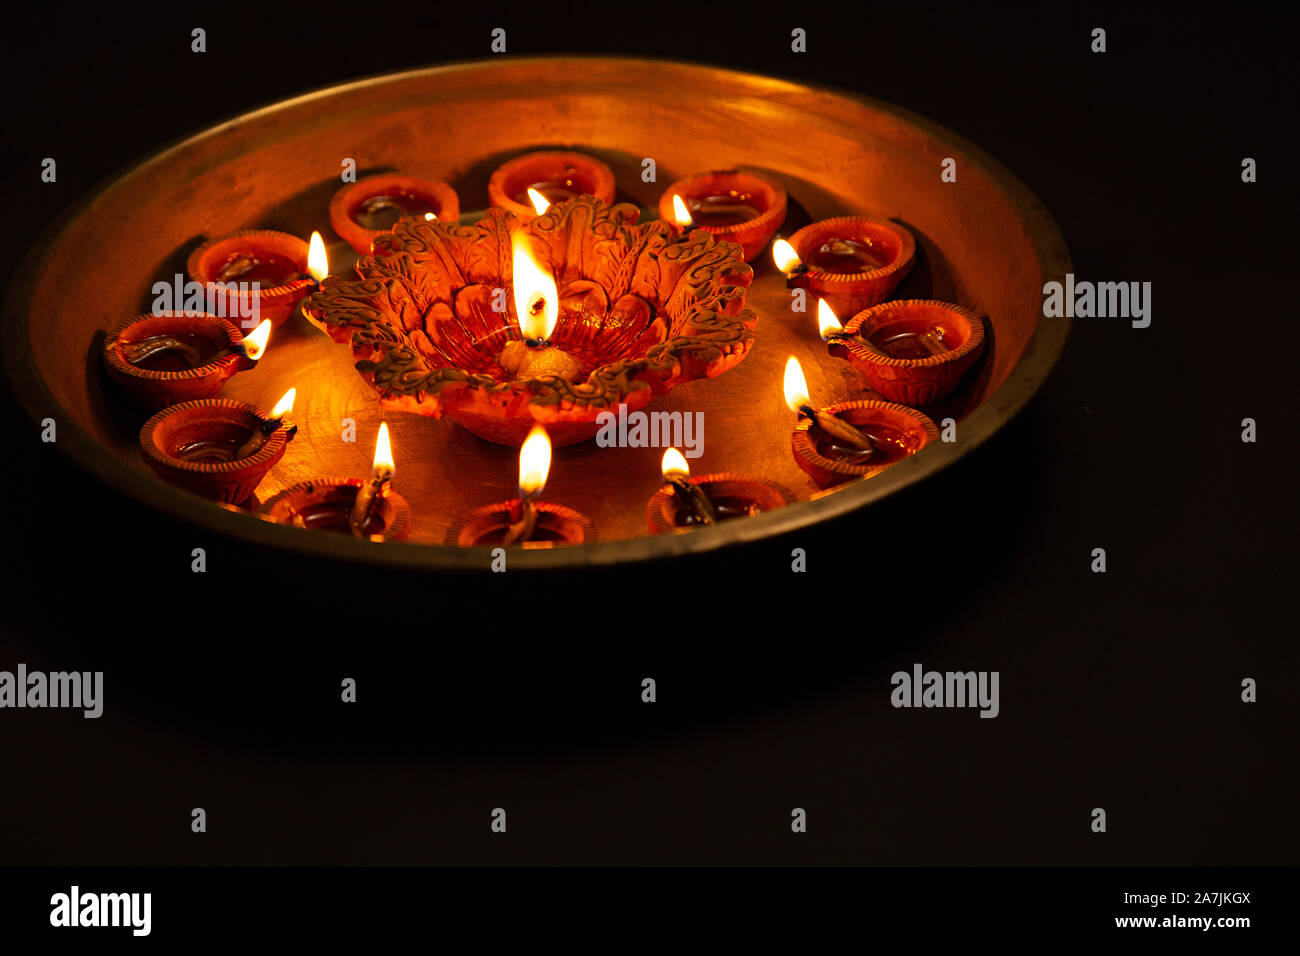 Iluminación In-Plate diyas de abundancia durante el Festival de Diwali celebración nadie Foto de stock